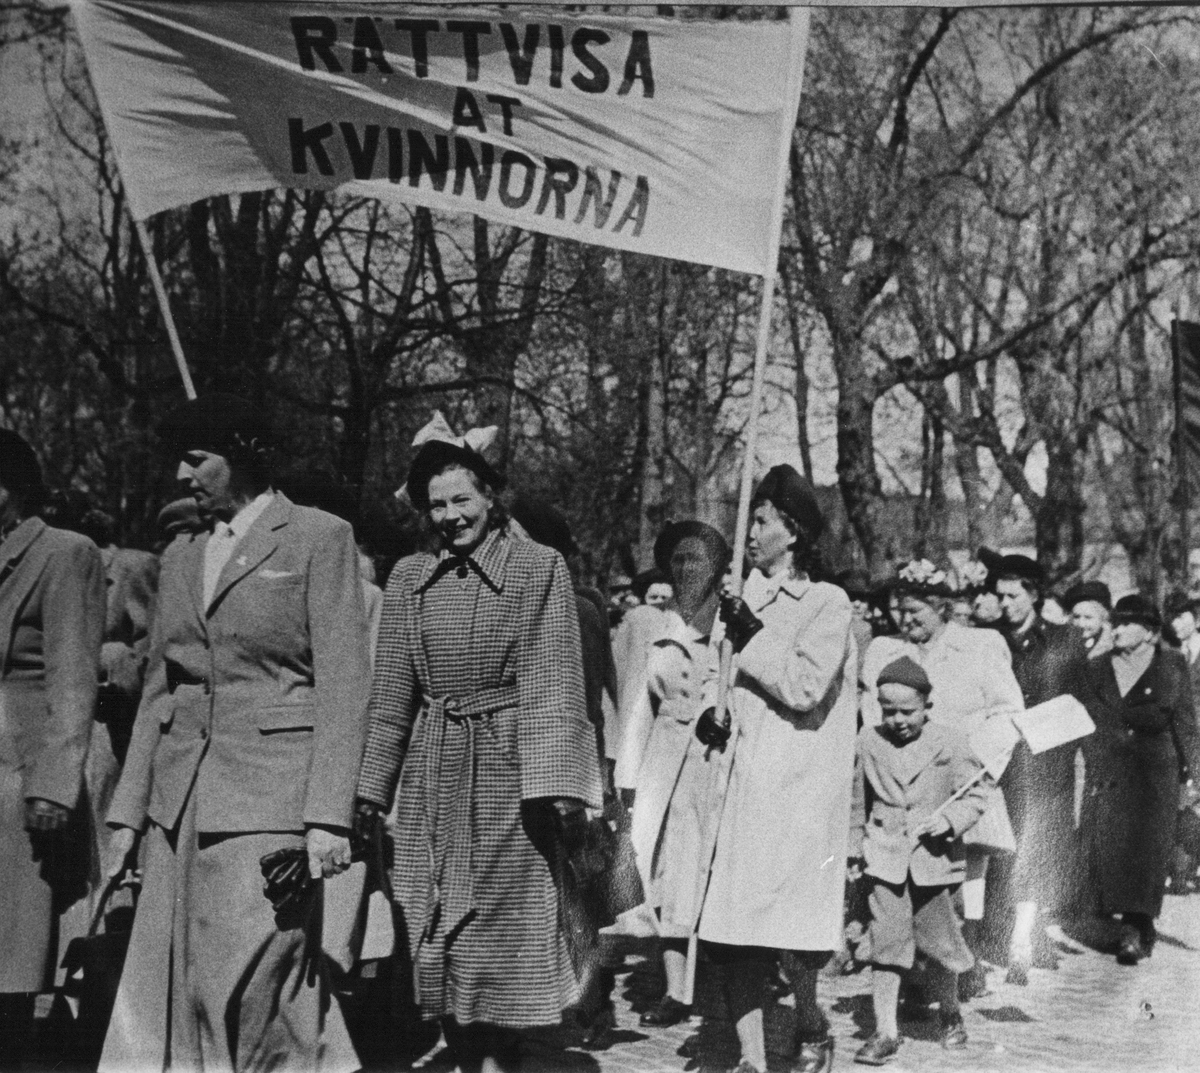 1 maj demonstration efter Malmslättsvägen. En banderoll Rättvisa åt kvinnorna.